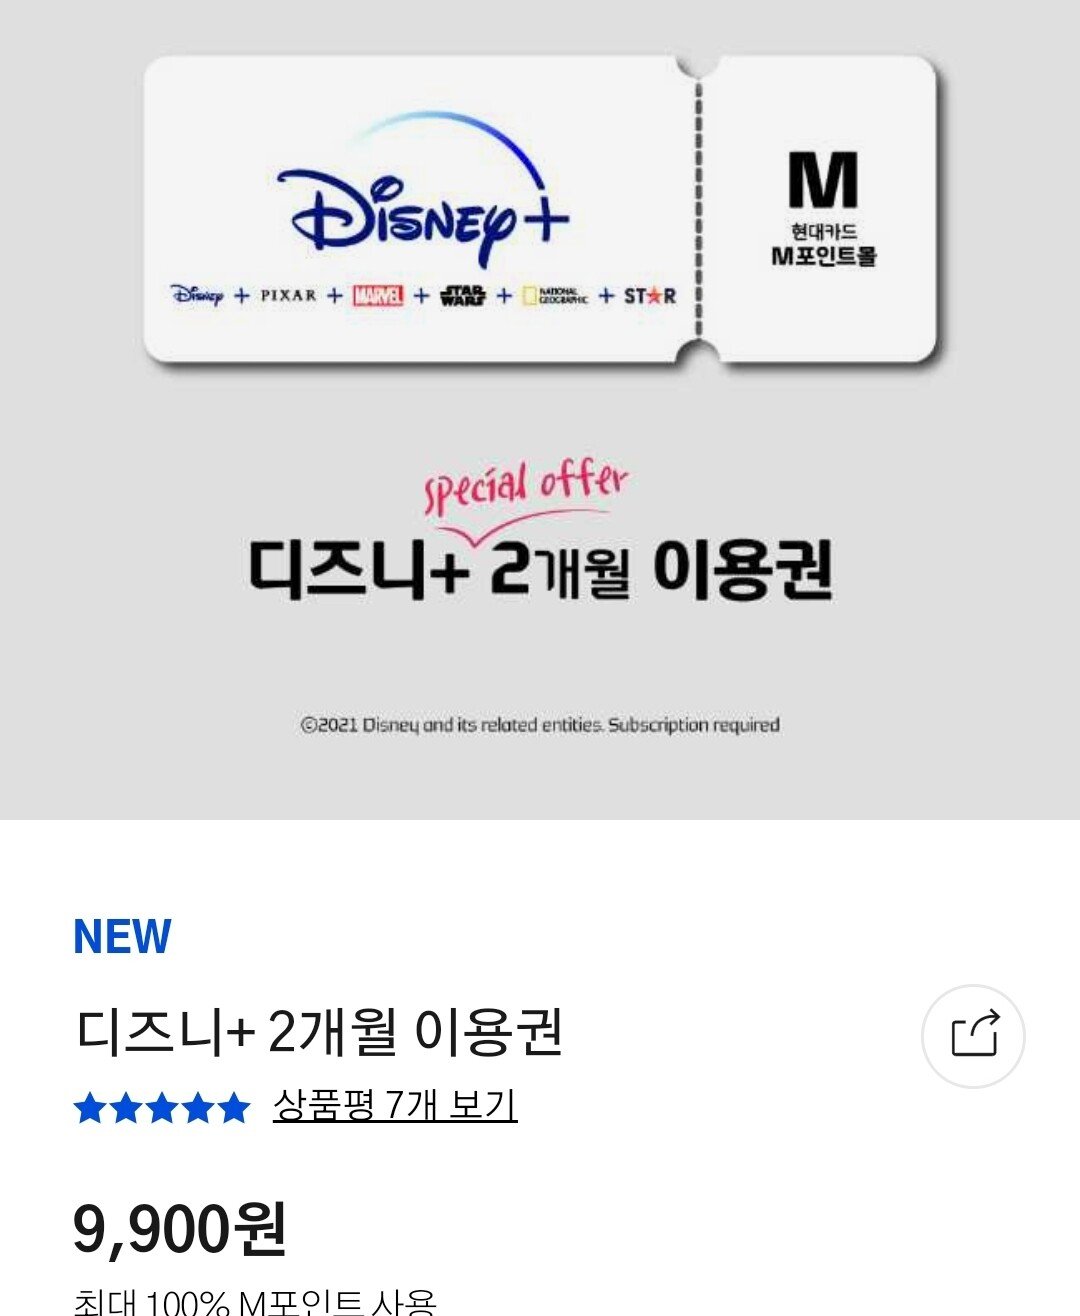 [현대카드] 디즈니 플러스 2개월 이용권 (9,900원) (무료)